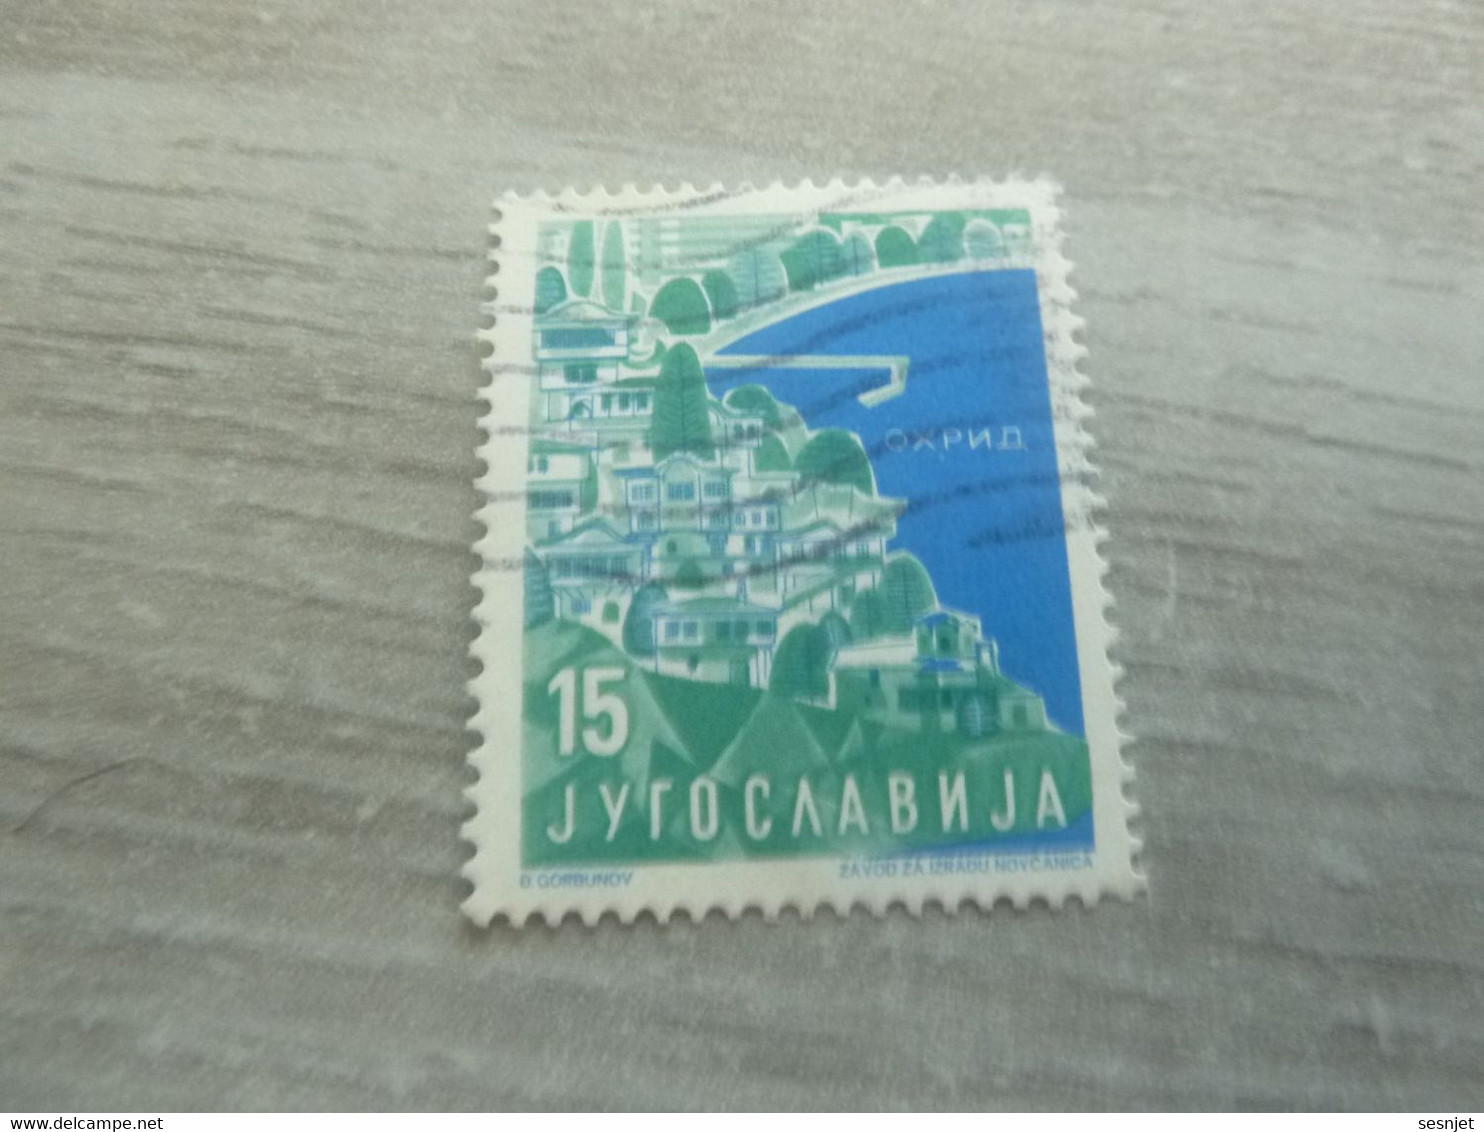 Jyrocaabnja - Oxpno - Corbunov - Val 15 - Gris, Bleu Et Vert - Oblitéré - - Used Stamps